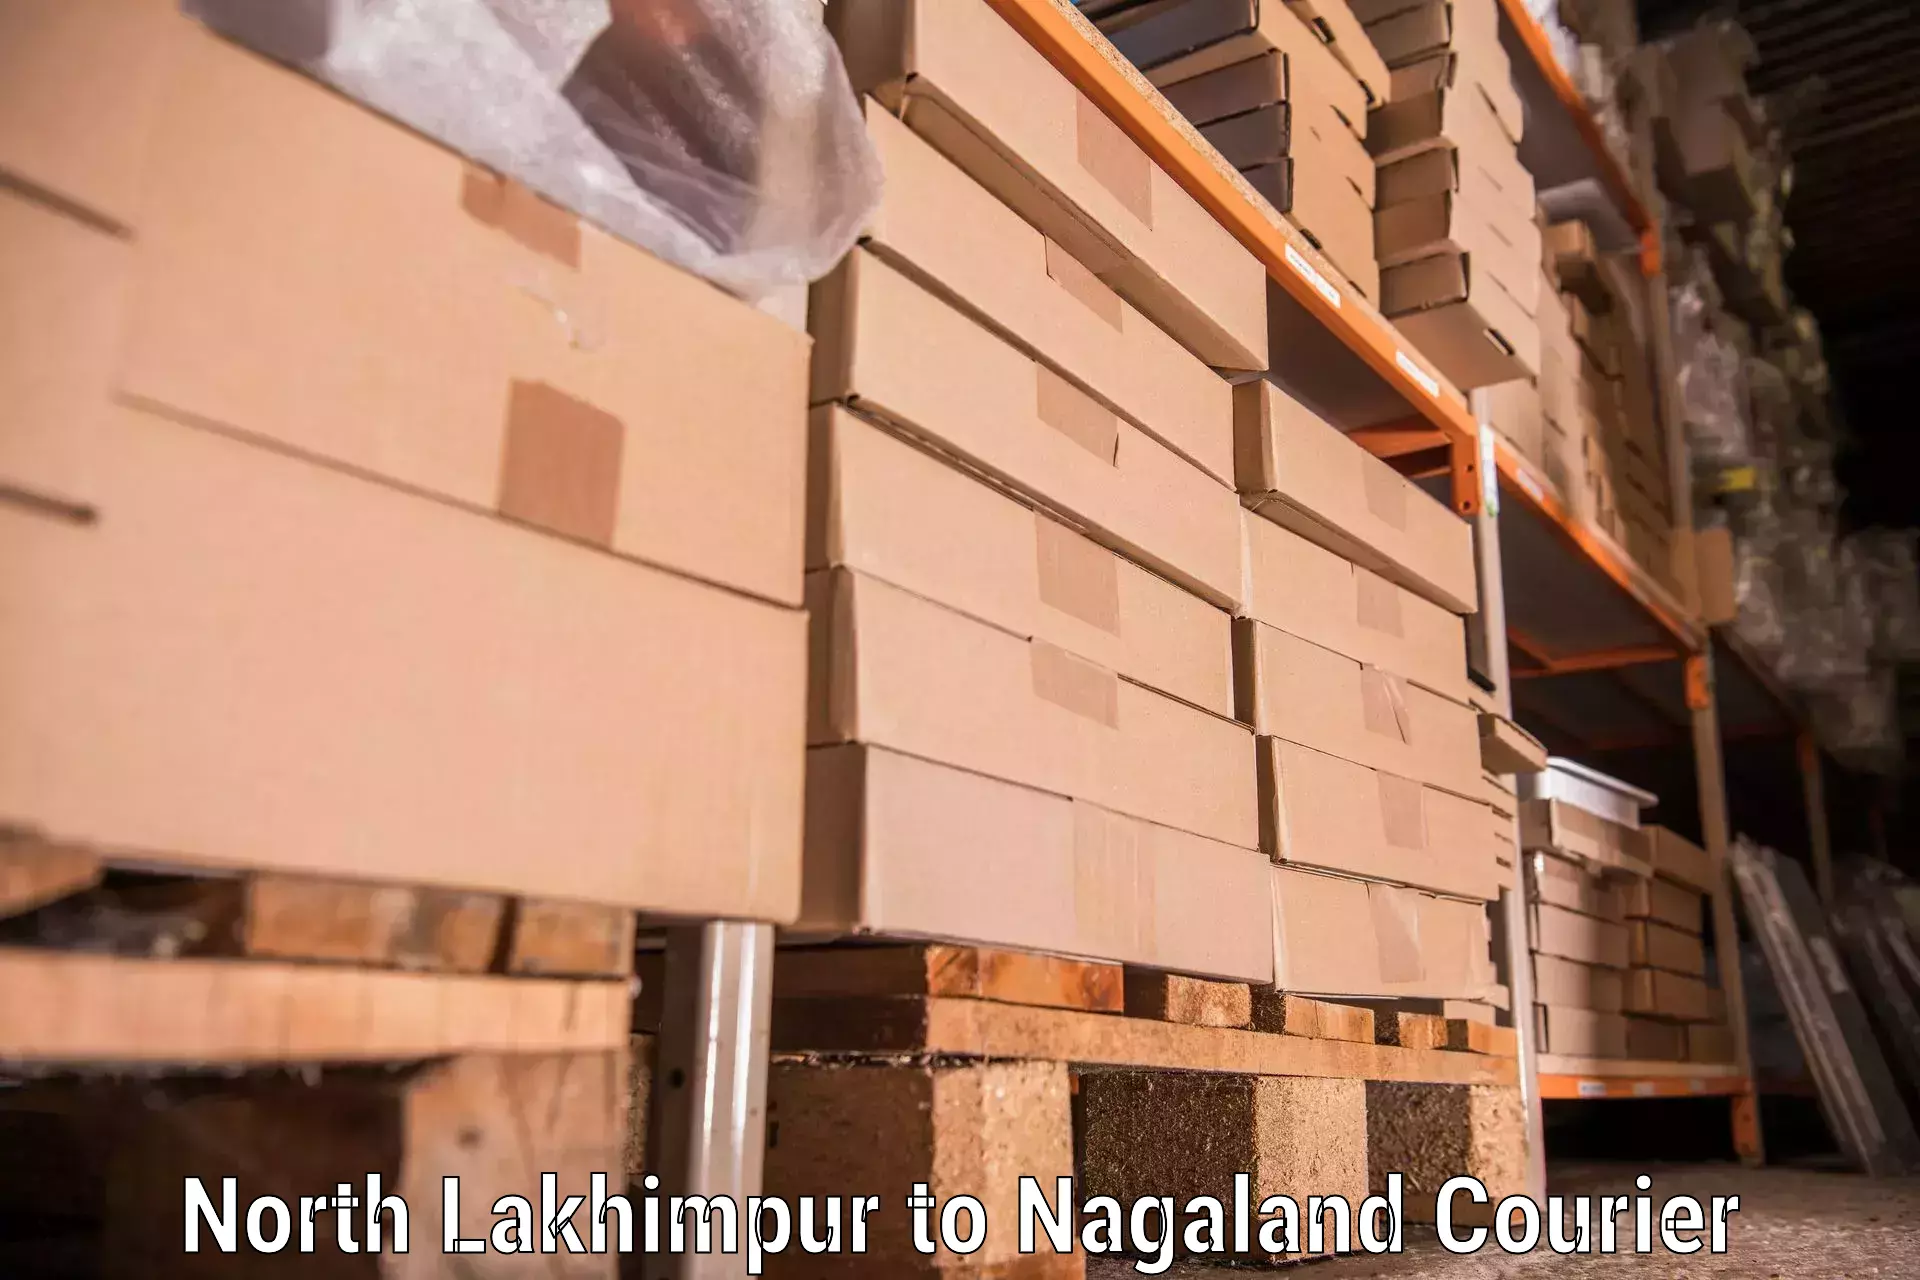 Furniture moving experts North Lakhimpur to Longleng